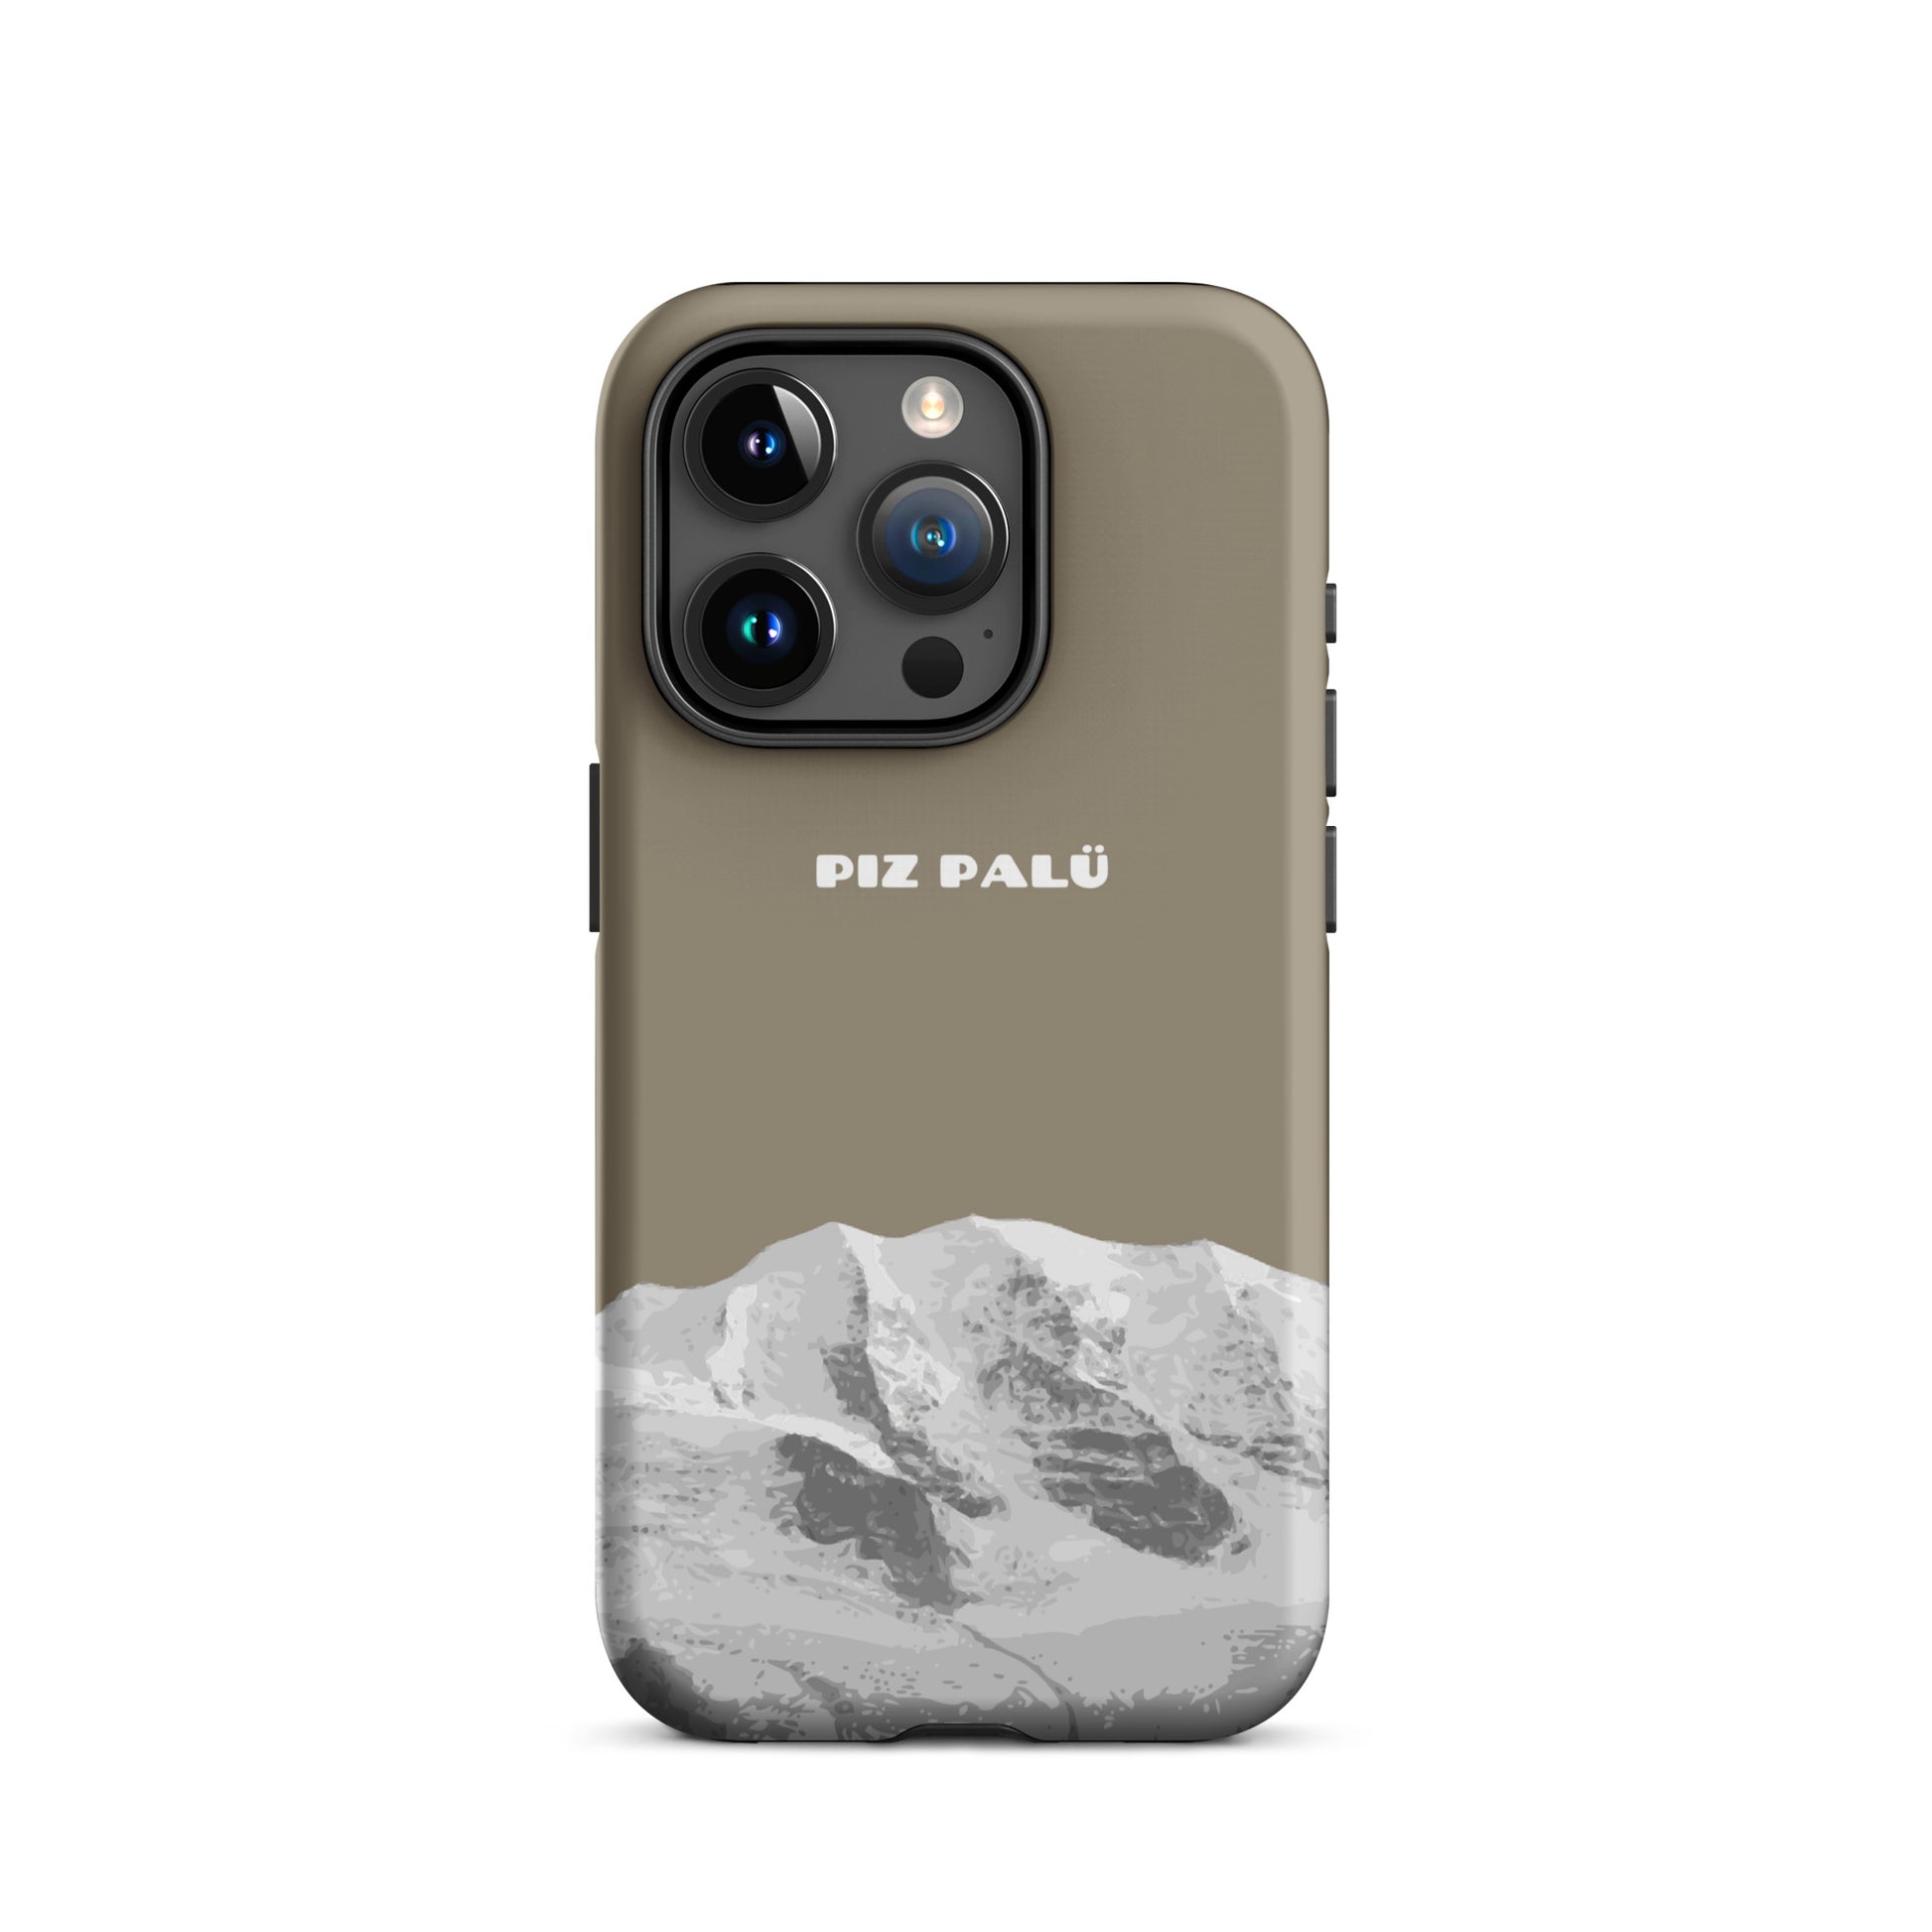 Hülle für das iPhone 15 Pro von Apple in der Farbe Graubrau, dass den Piz Palü in Graubünden zeigt.